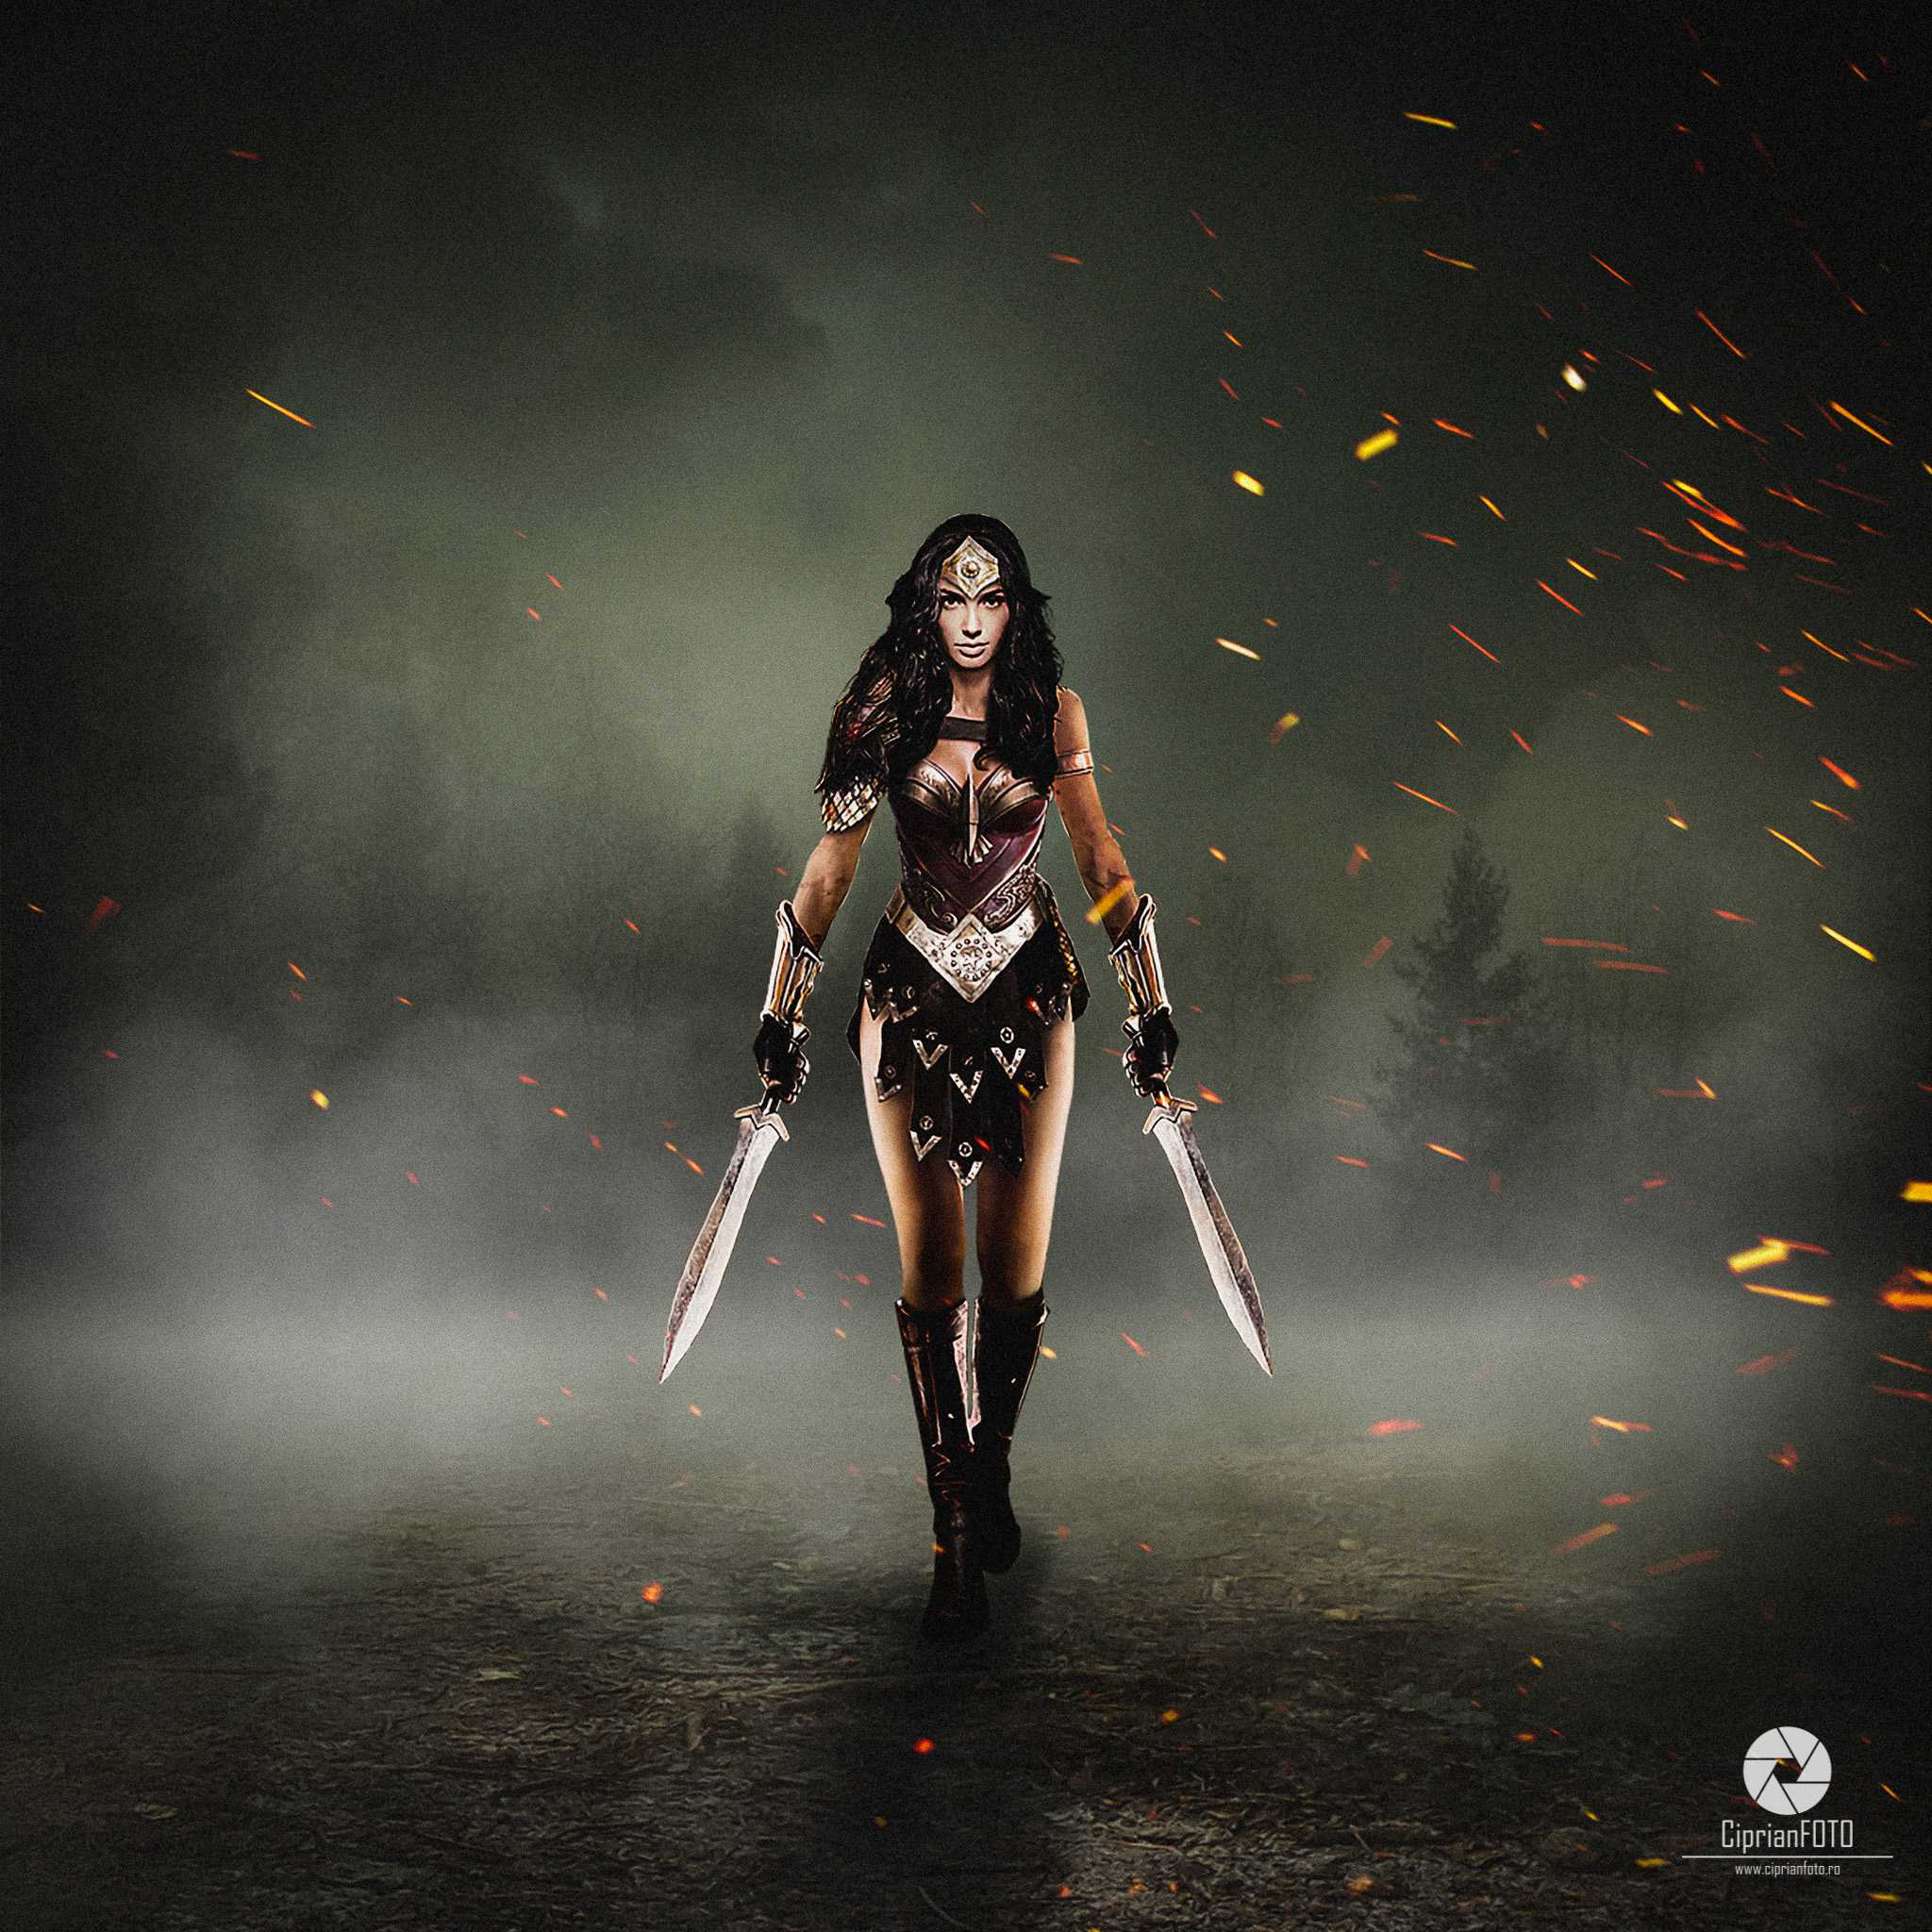 Wonder Woman, Photoshop Manipulation Tutorial, CiprianFOTO